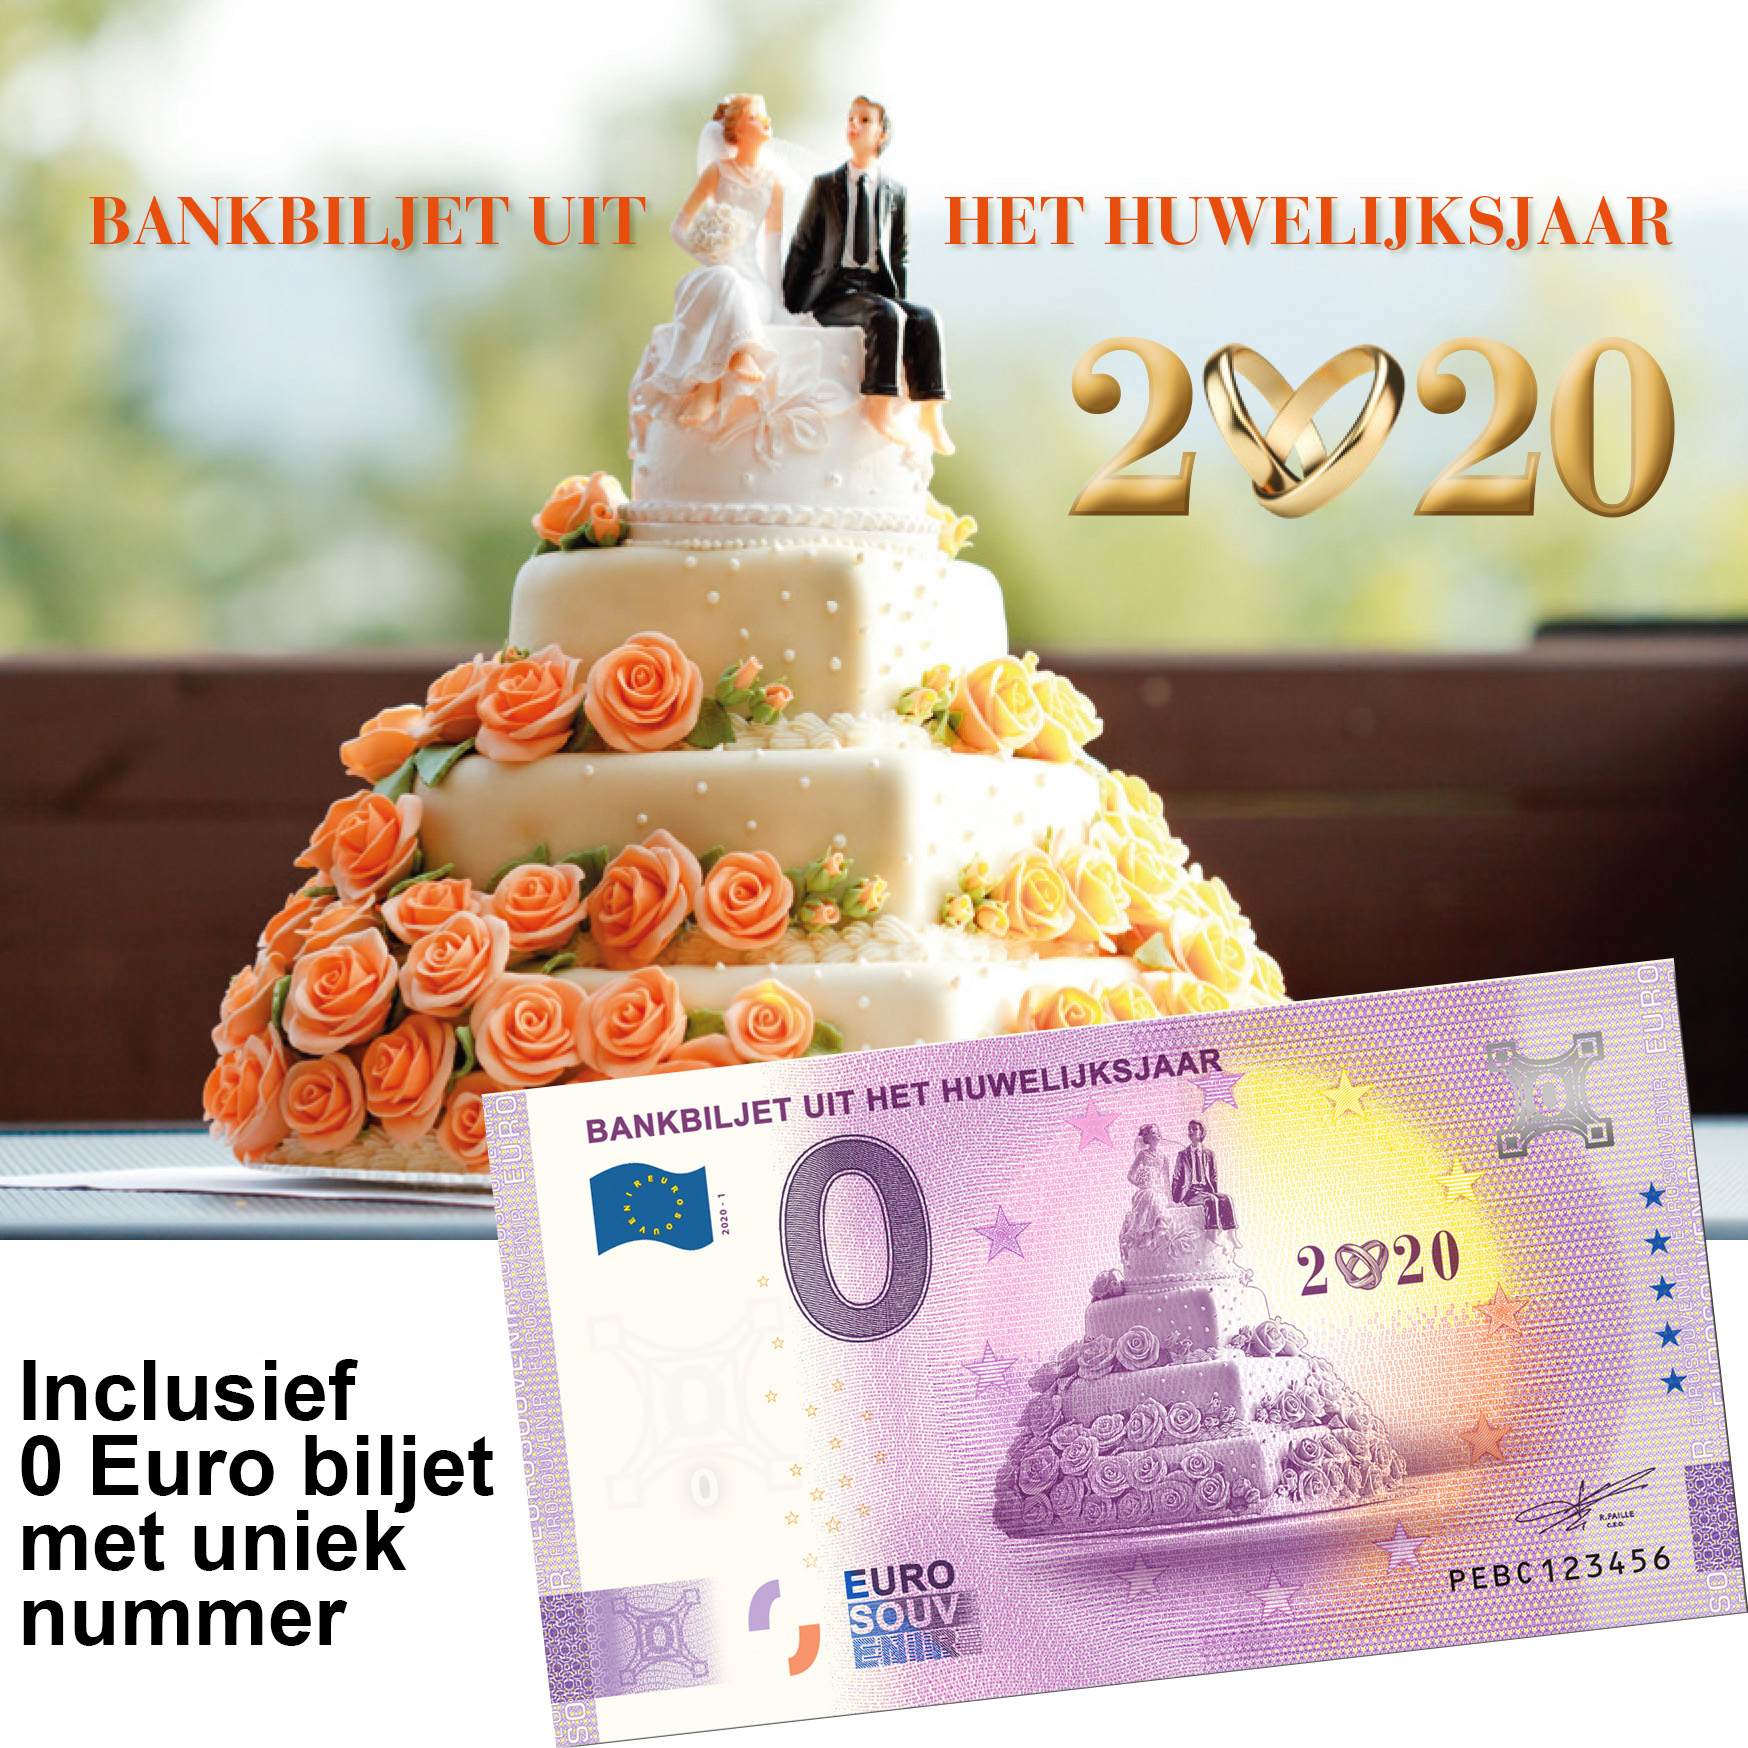 0 Euro souvenir note Nederland 2020 - Bankbiljet uit het huwelijksjaar in cadeausleeve